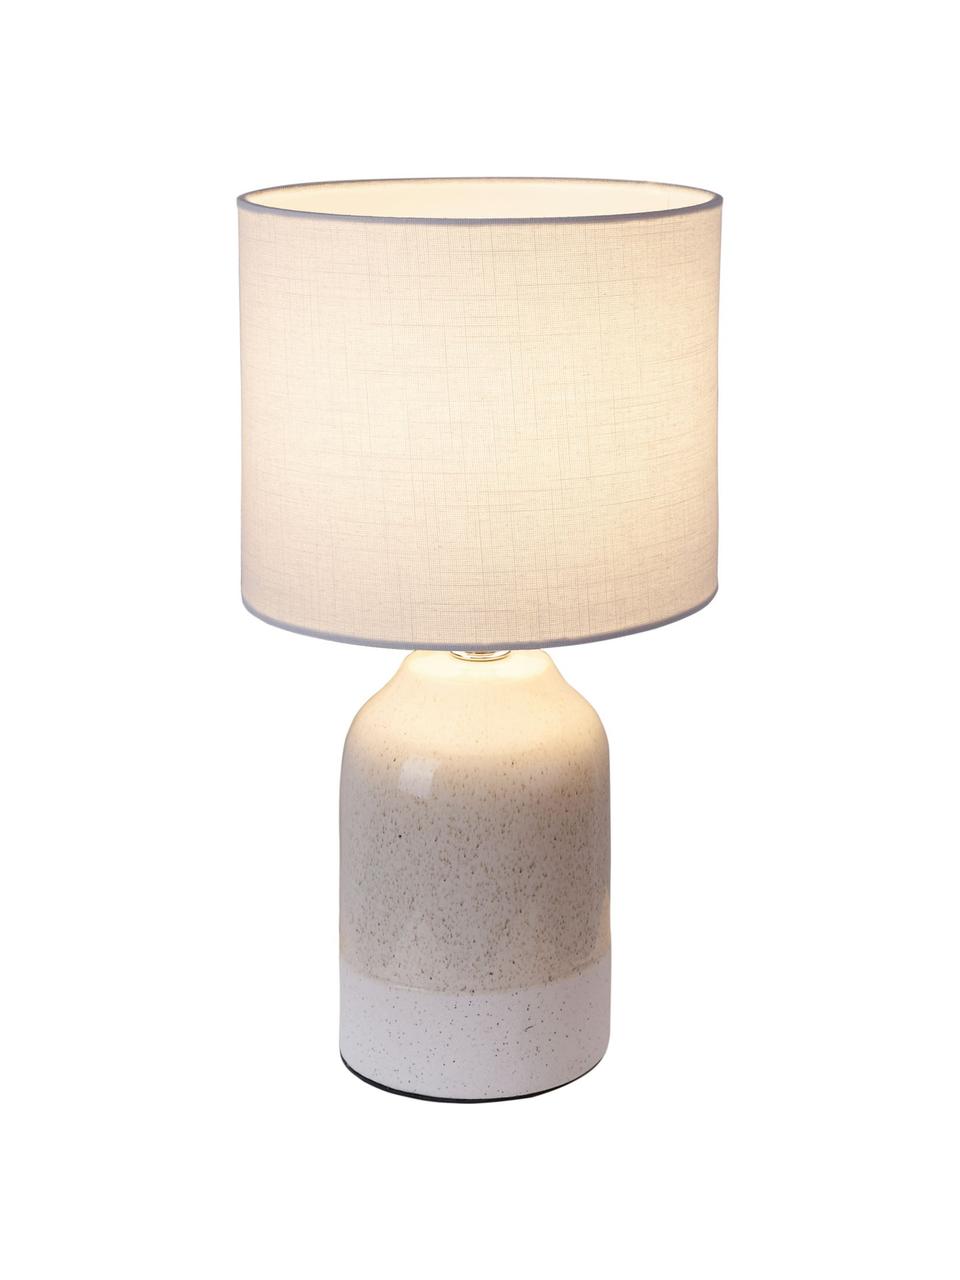 Kleine Nachttischlampe Sandy Glow aus Keramik, Lampenschirm: Leinen, Lampenfuß: Keramik, Beige, Weiß, Ø 18 x H 33 cm